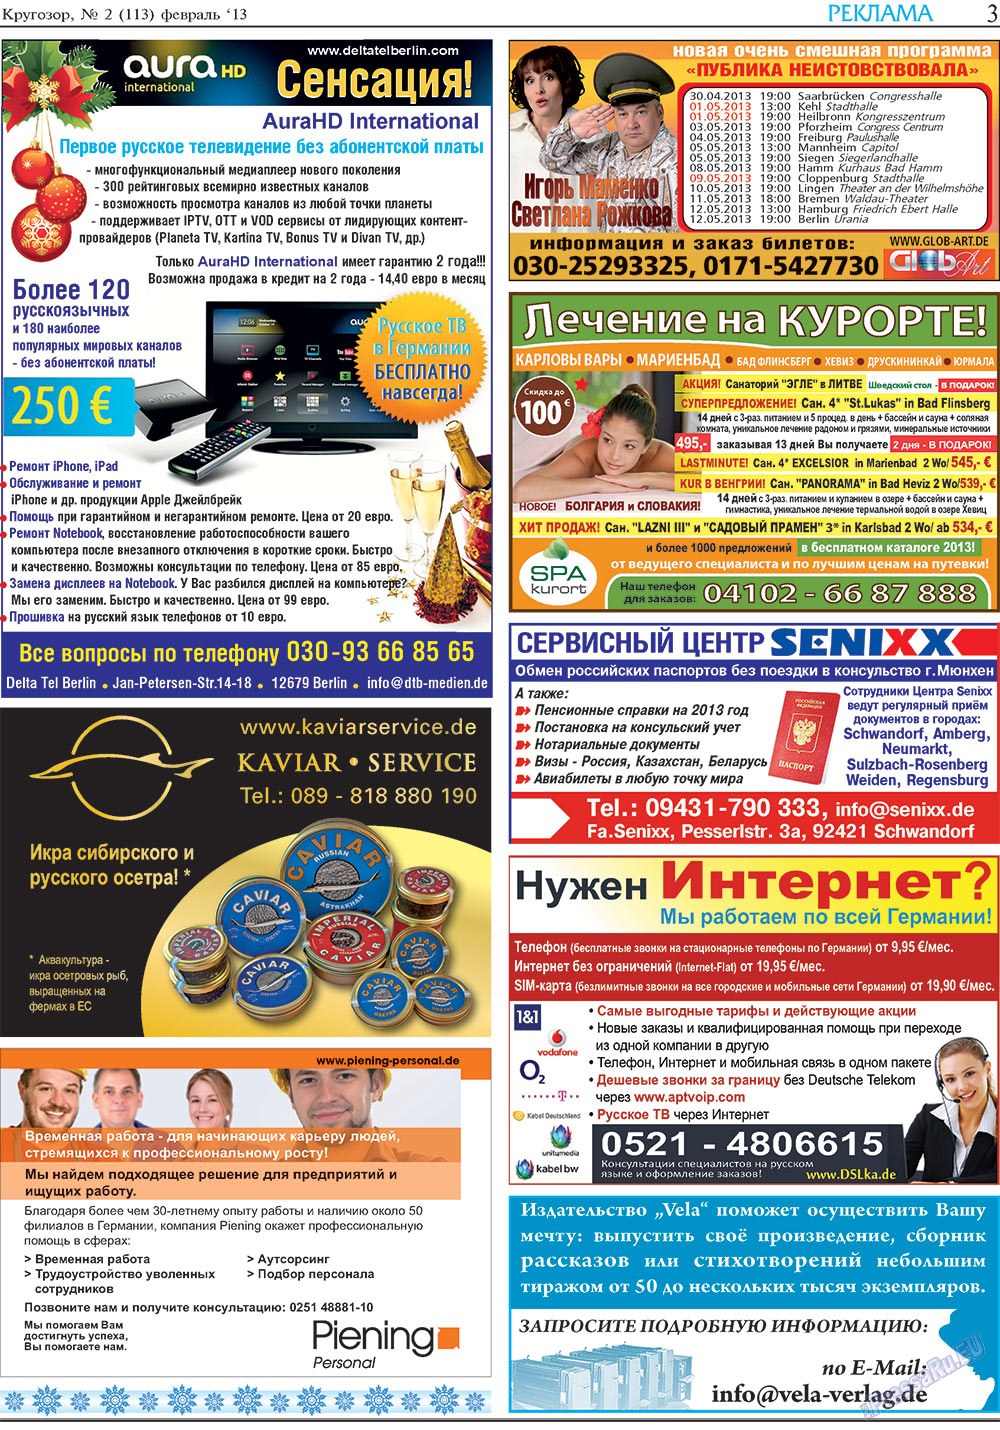 Кругозор, газета. 2013 №2 стр.3